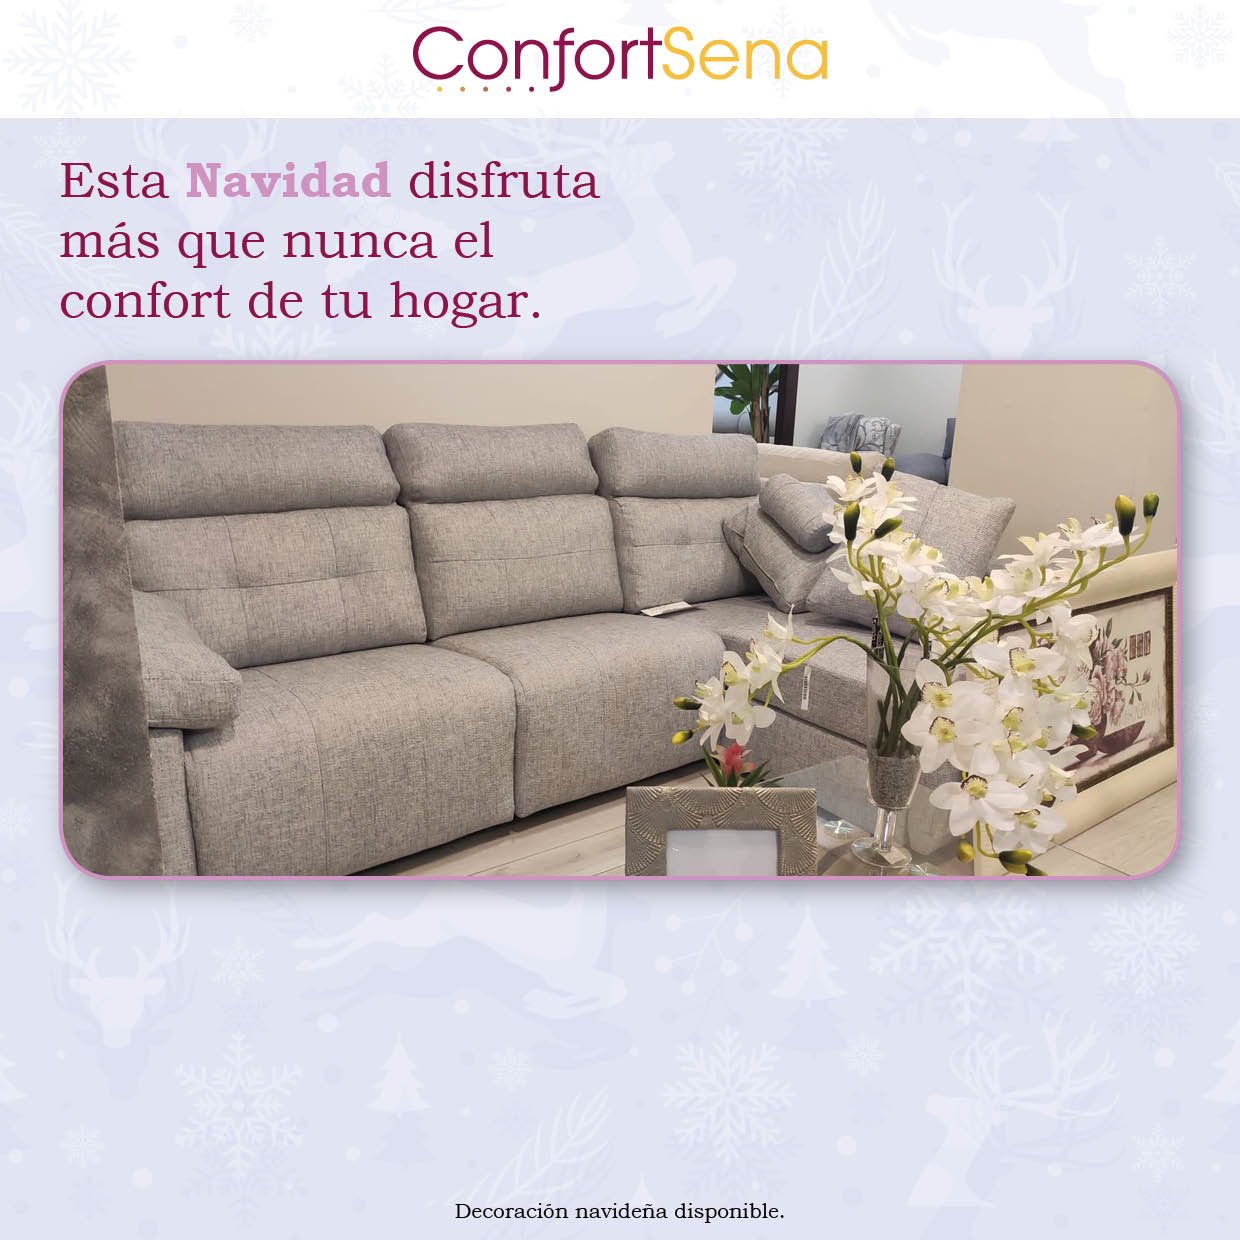 navidad-confortsena-muebles-sofas-granada20